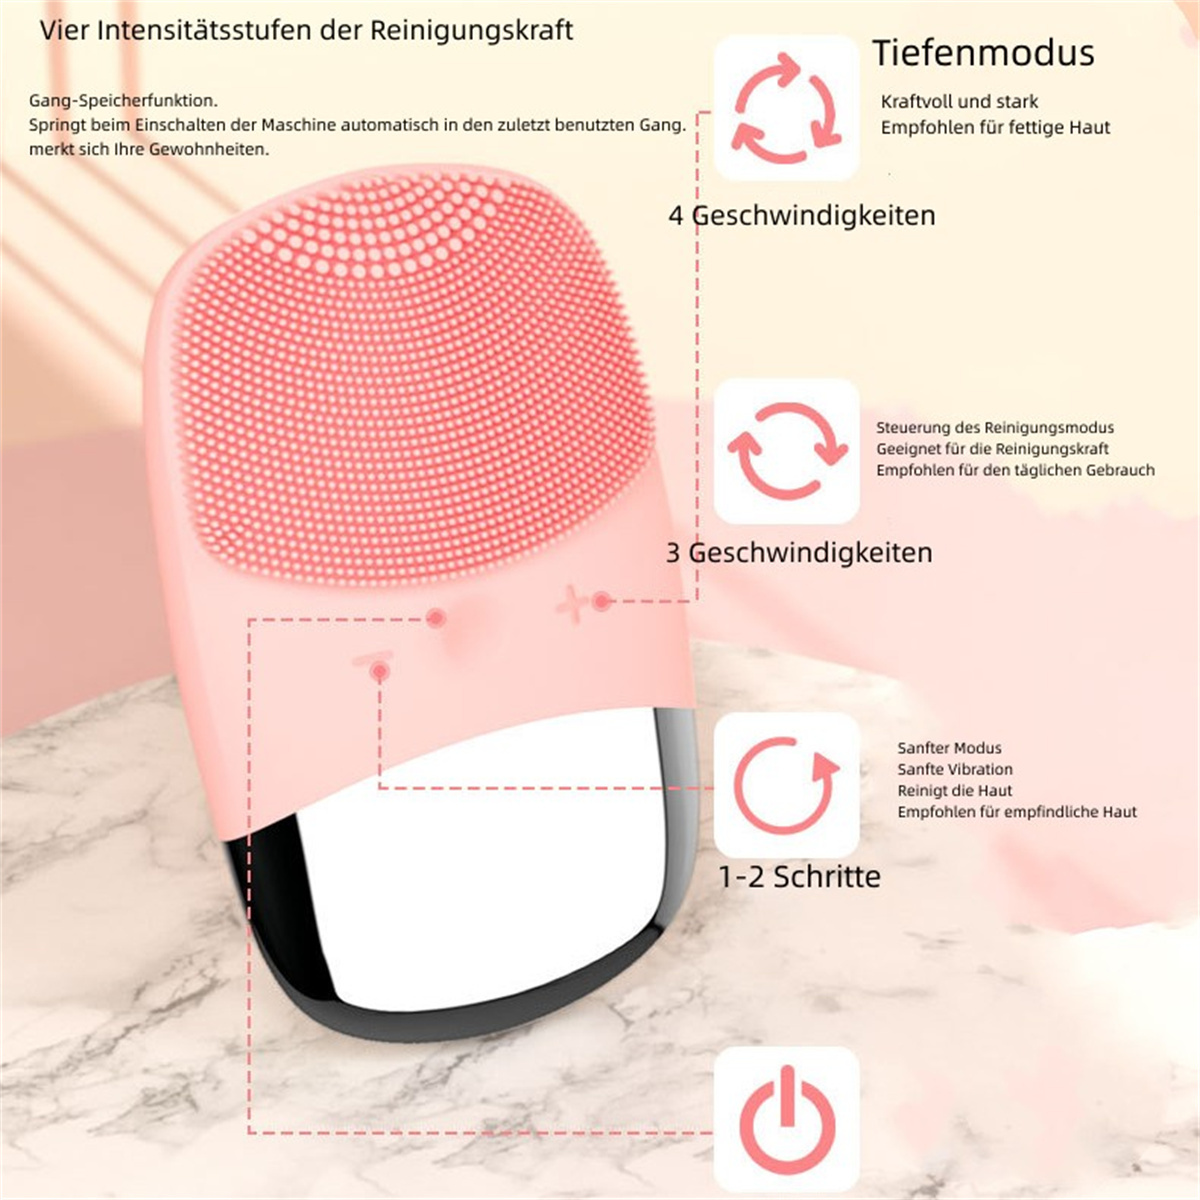 Facial Cleanser SYNTEK Waterproof Massagegerät Pore Cleanser Electric Introducer Ultrasonic